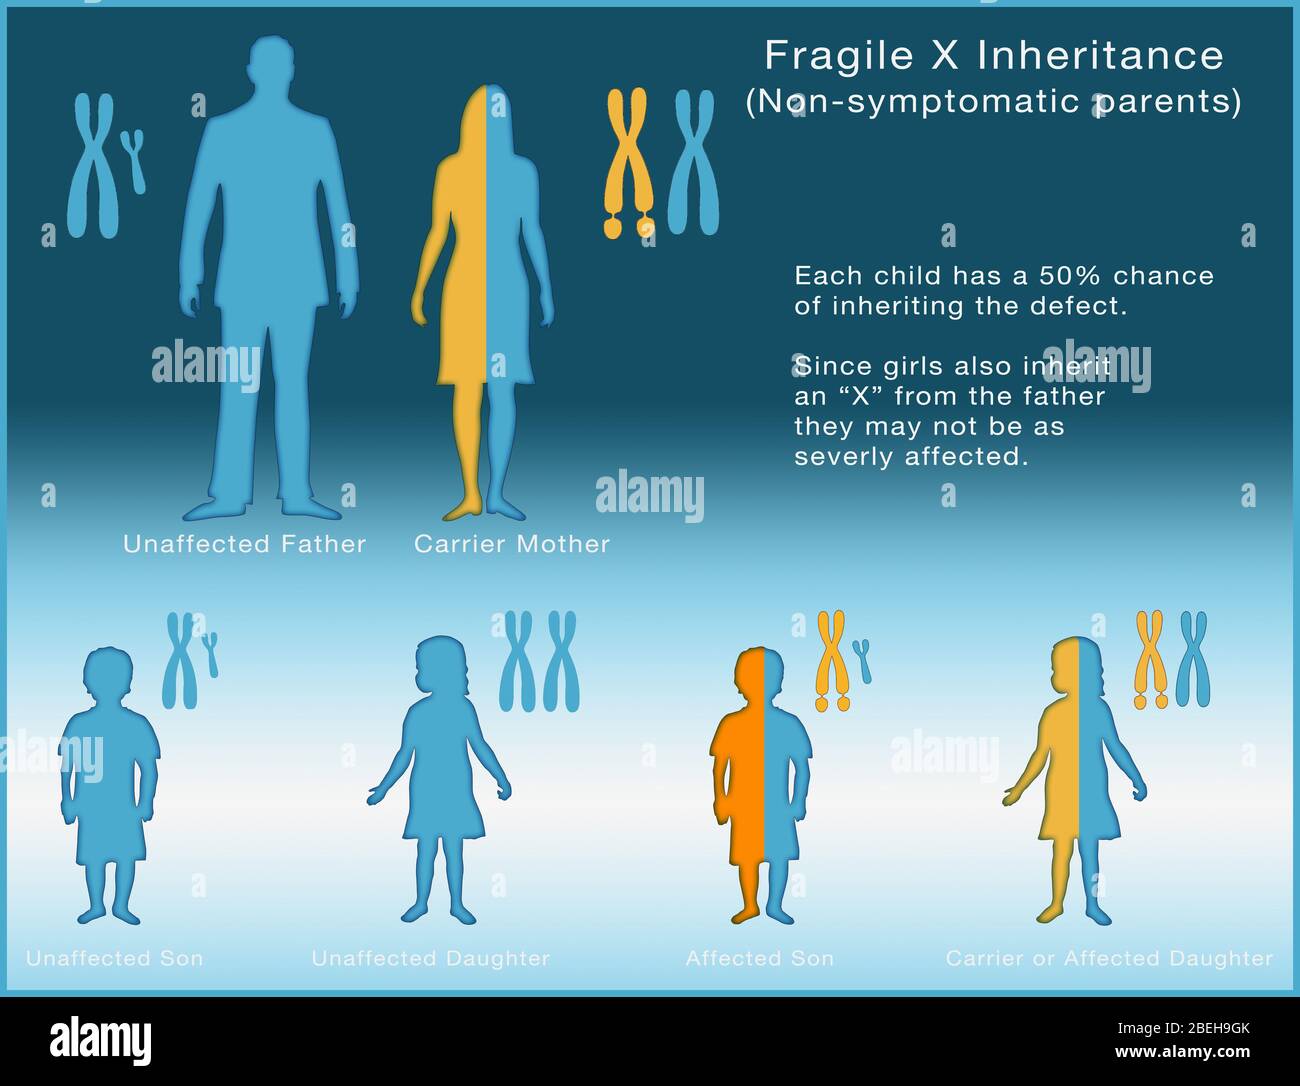 Héritage X fragile, illustration Banque D'Images